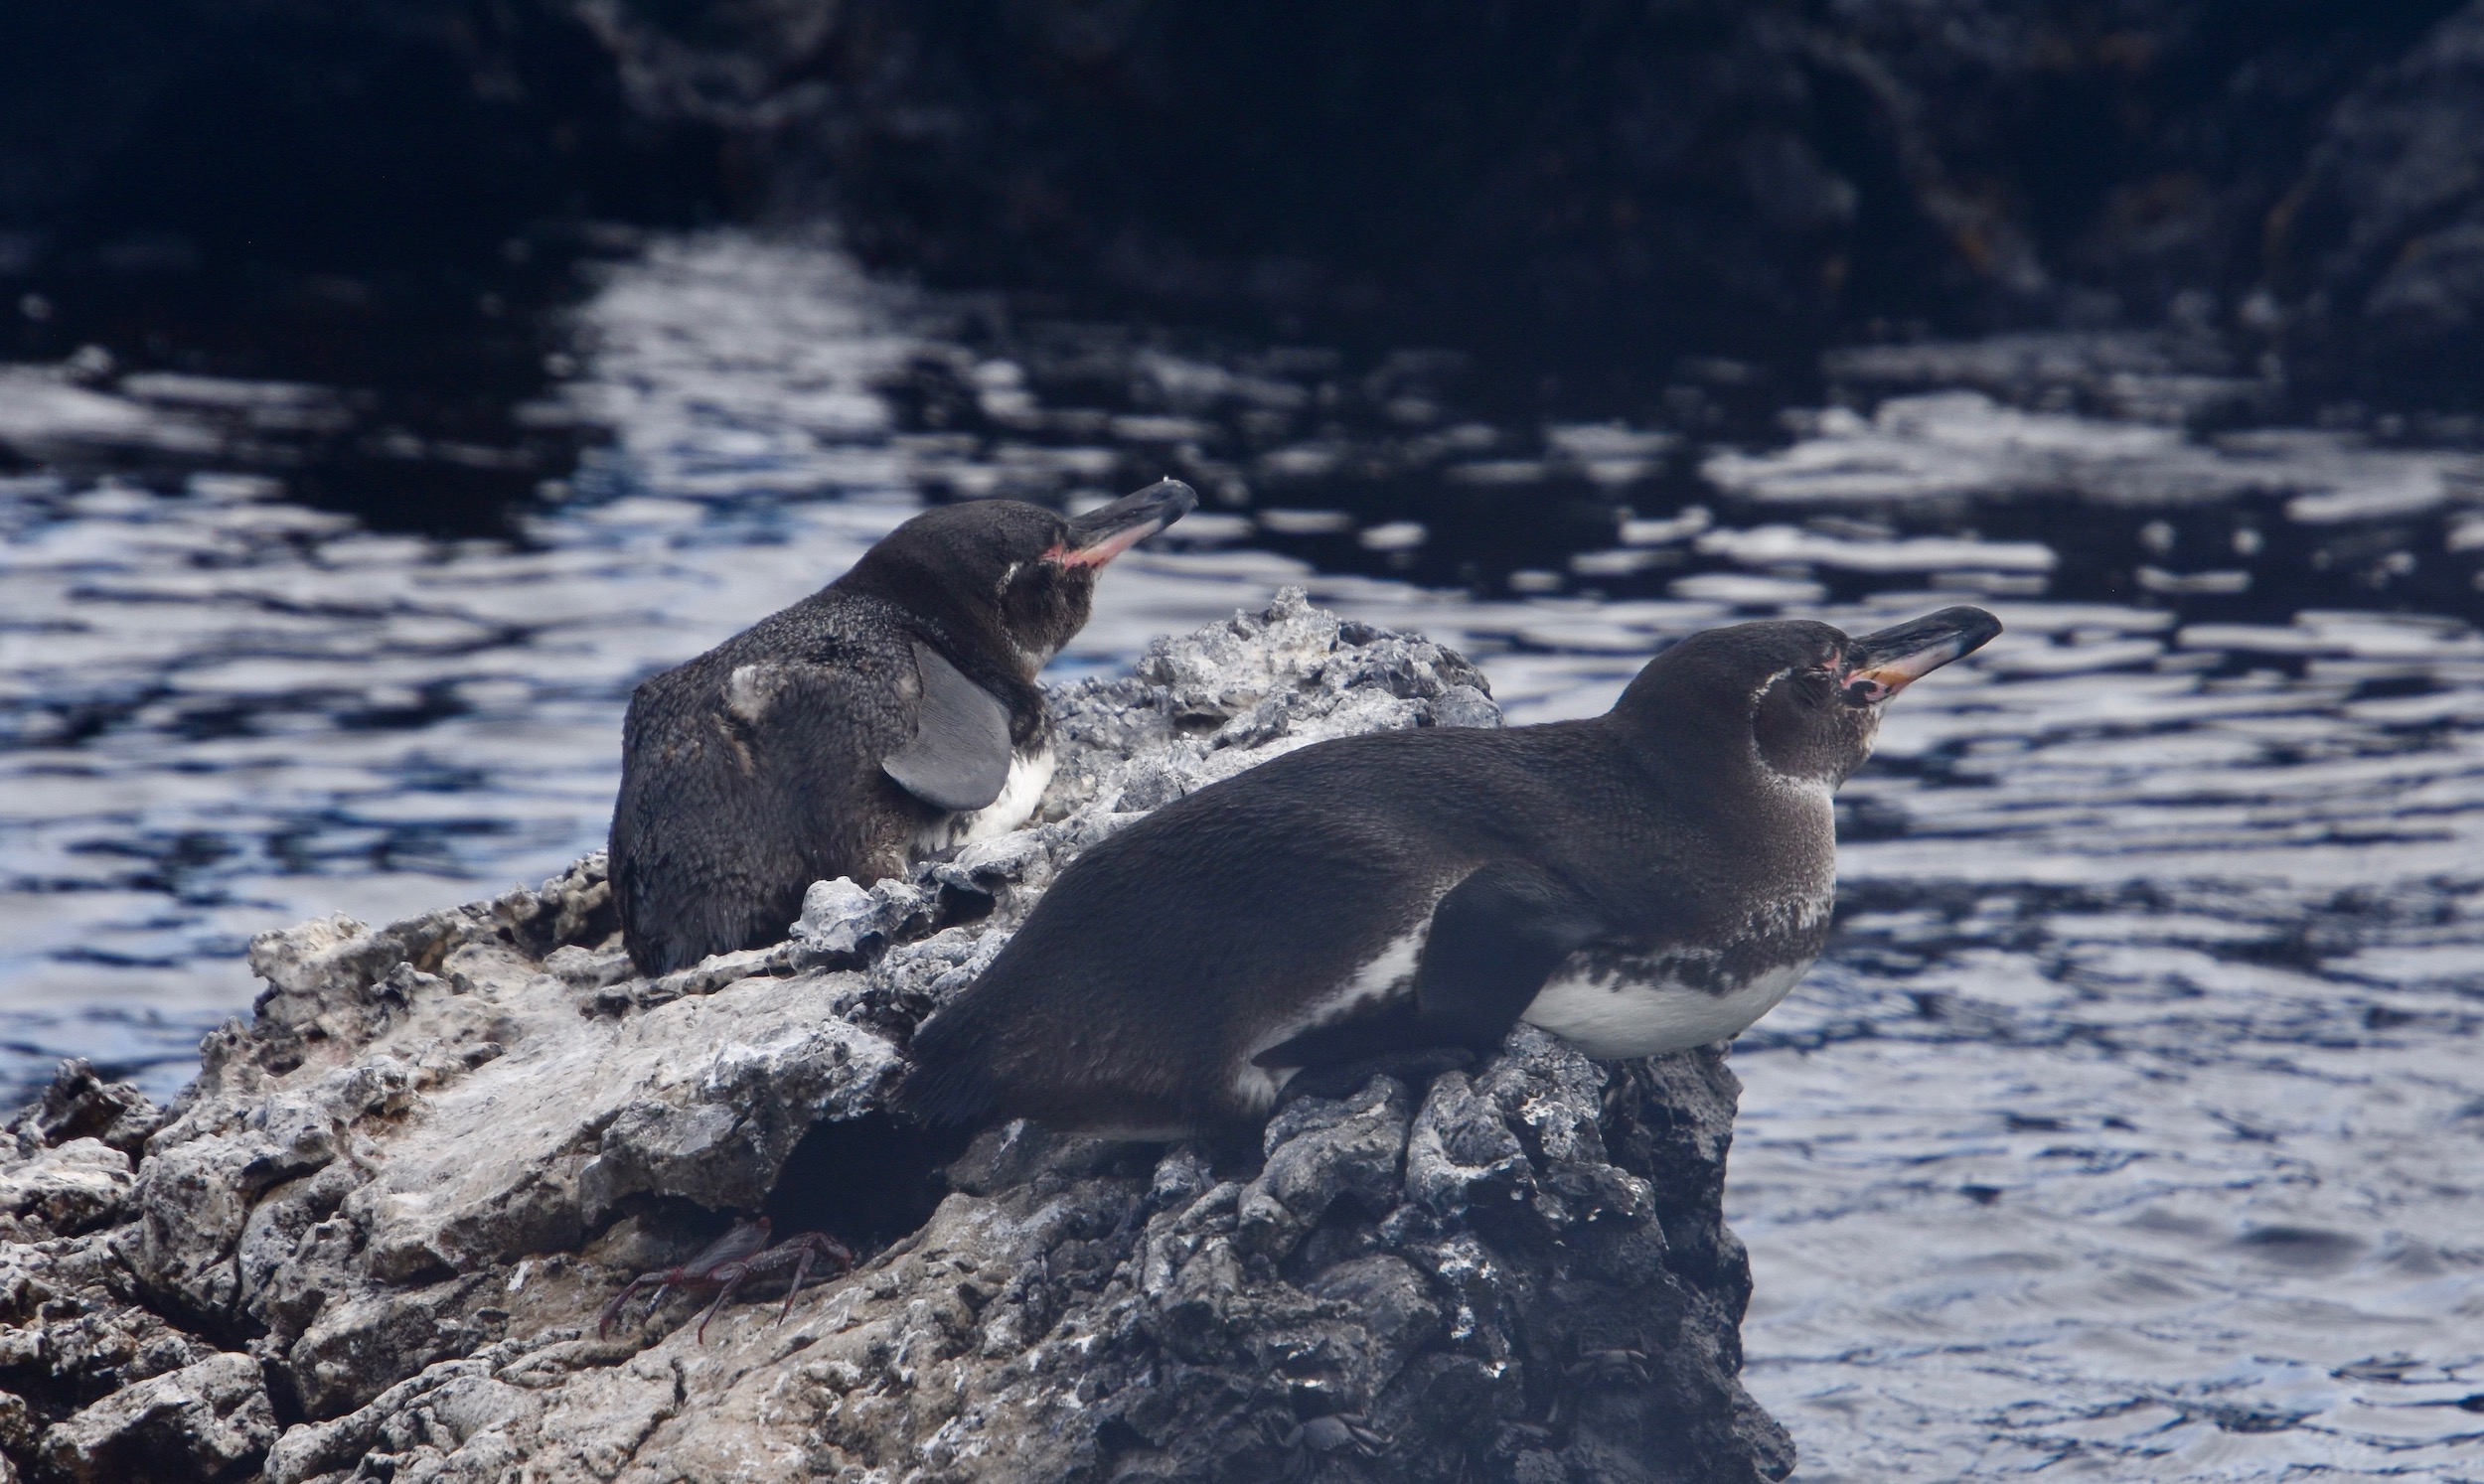 Galapagos Penguins, Isabela Island